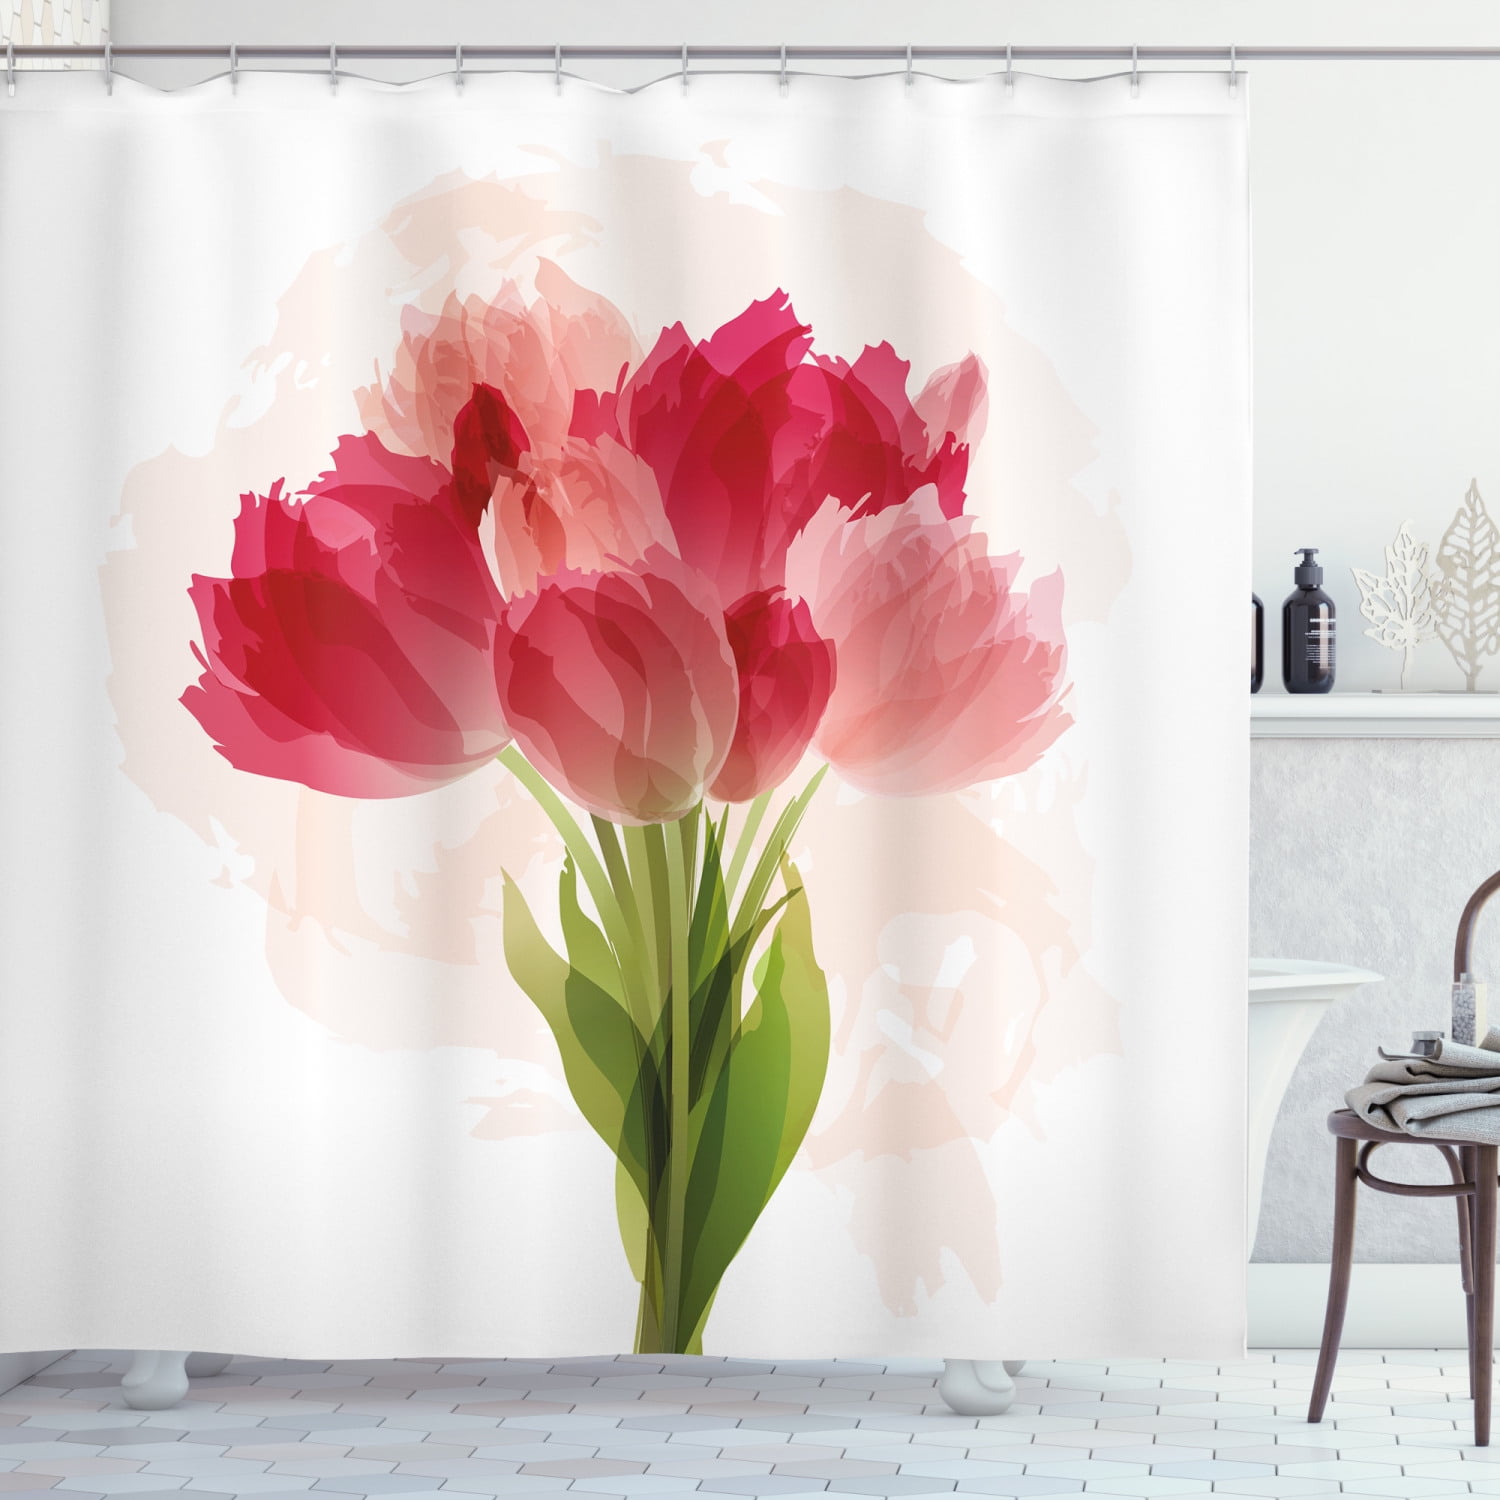 Poppy Shower Curtain Grunge Brush Flowers Print for Bathroom 